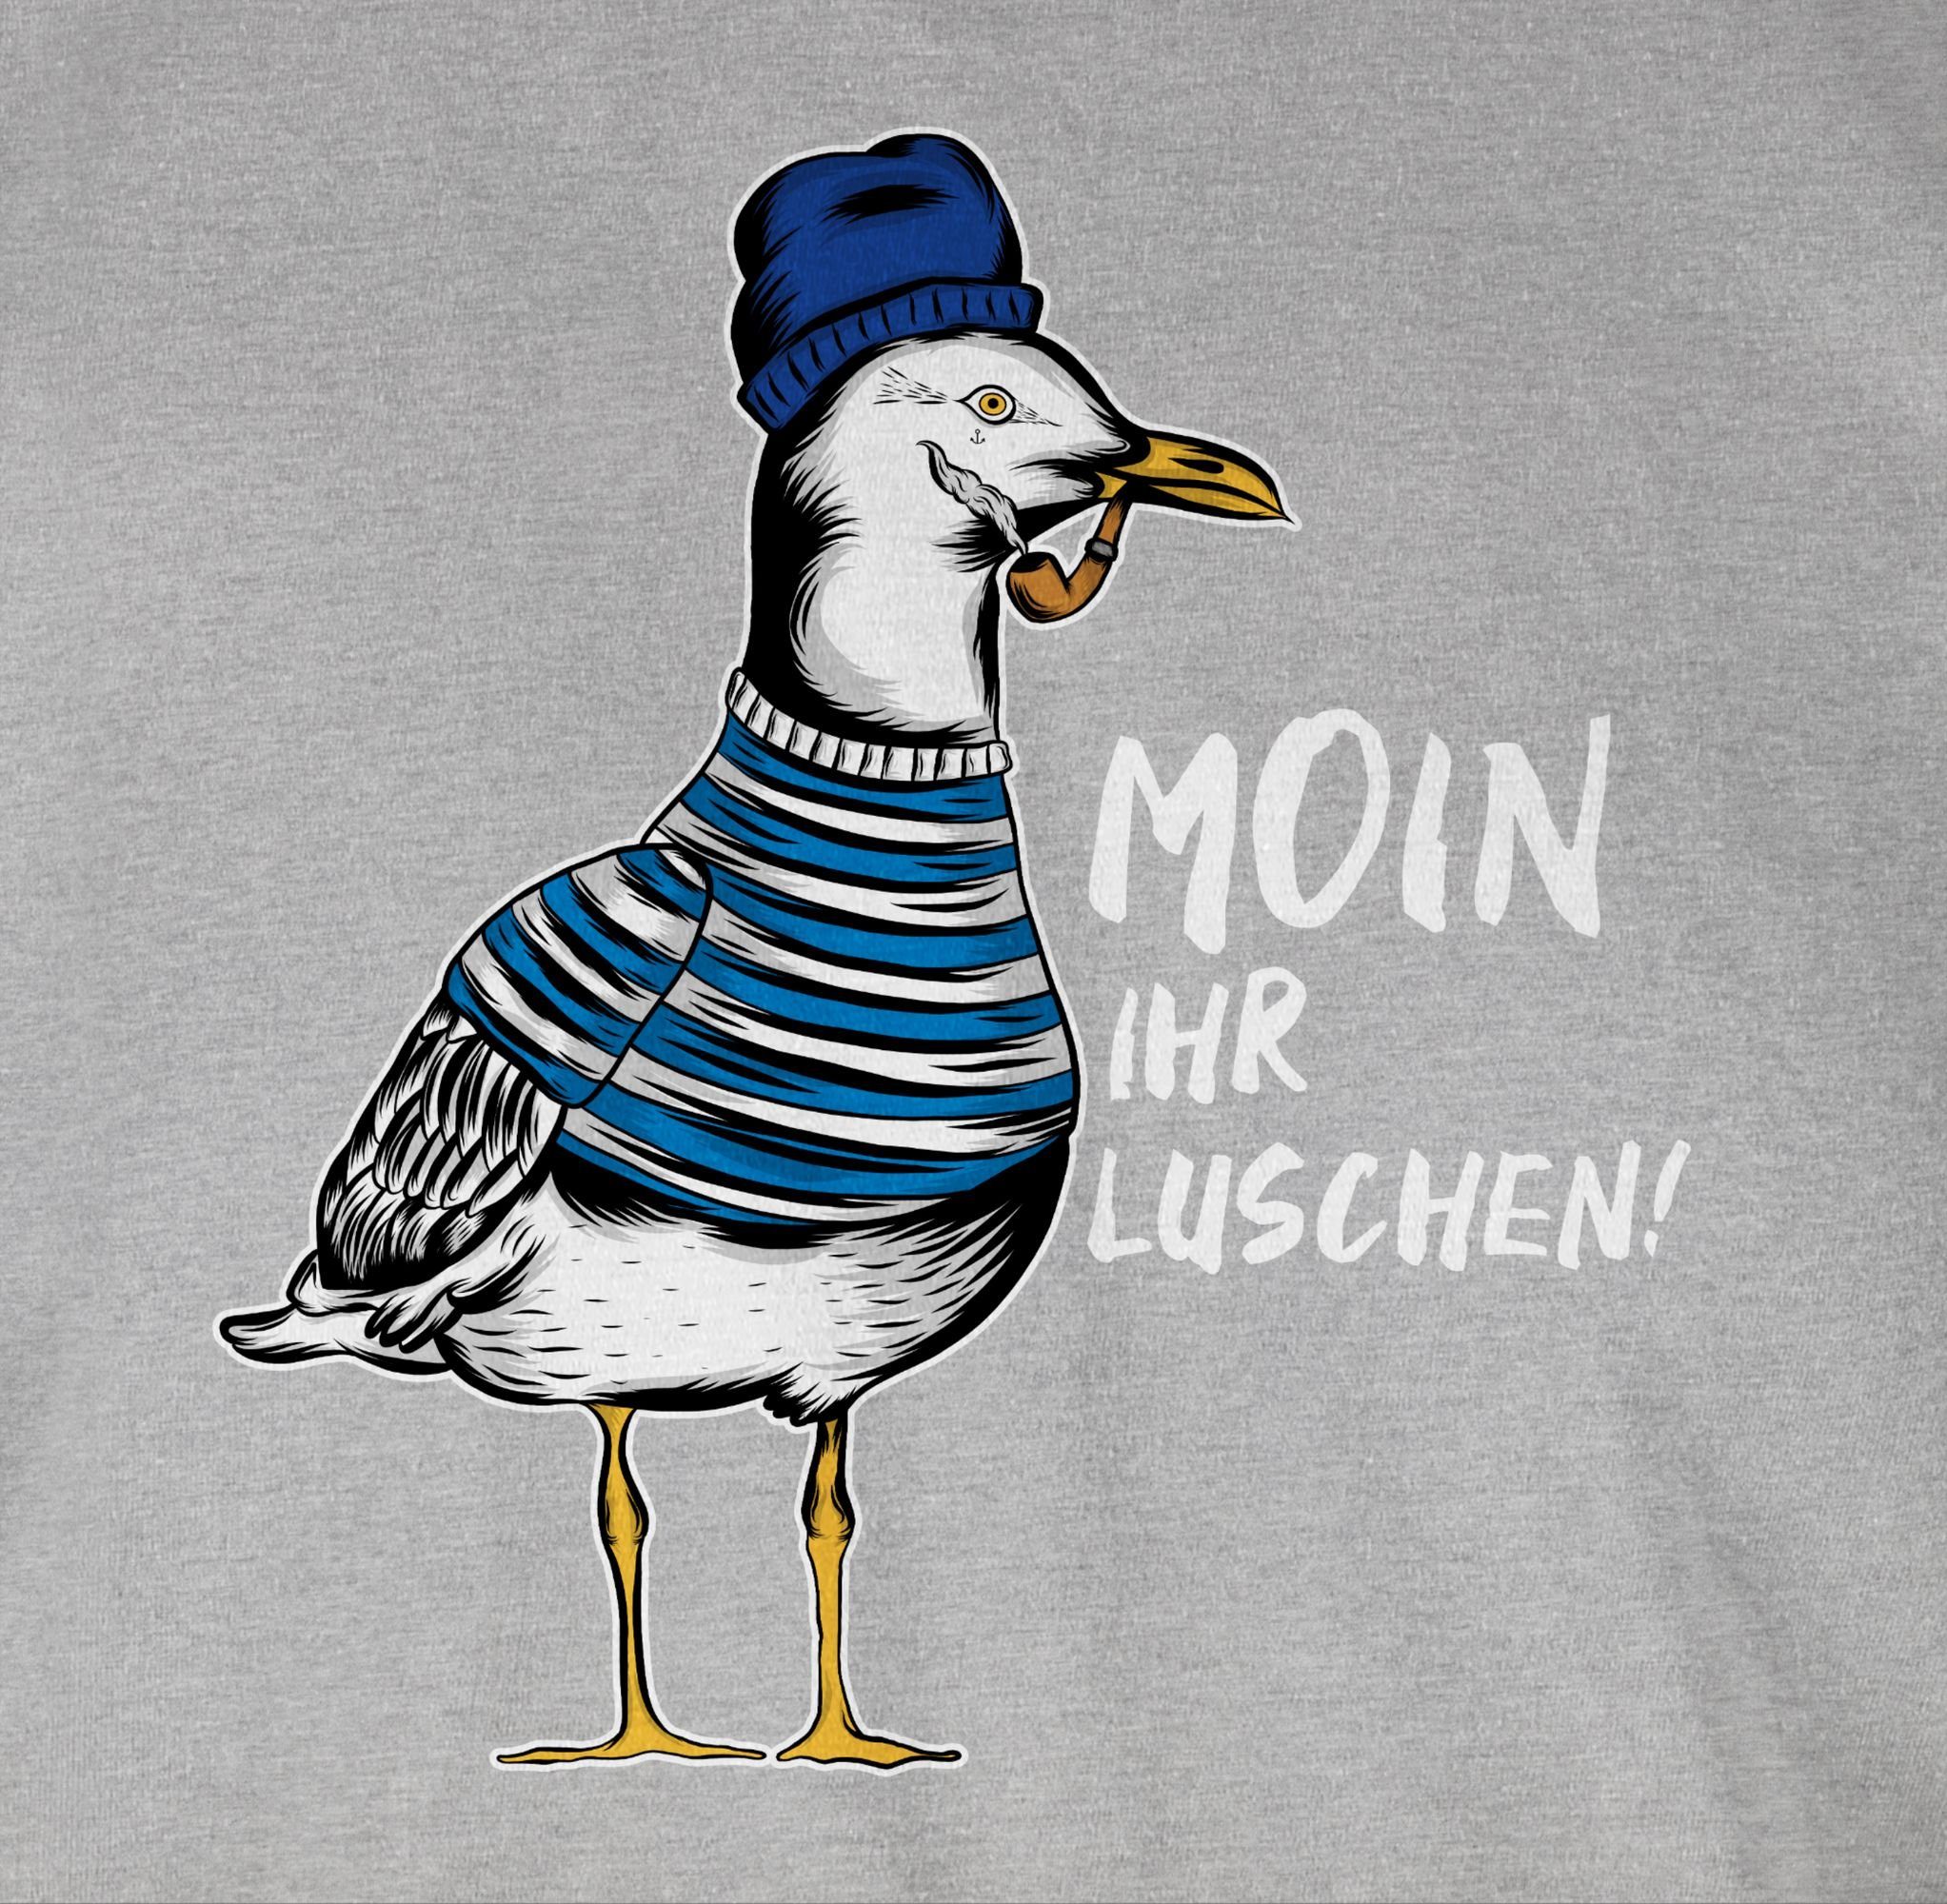 Statement Moin meliert - Coole Shirtracer Weiß Möwe Luschen Rundhalsshirt - 3 Sprüche Grau ihr